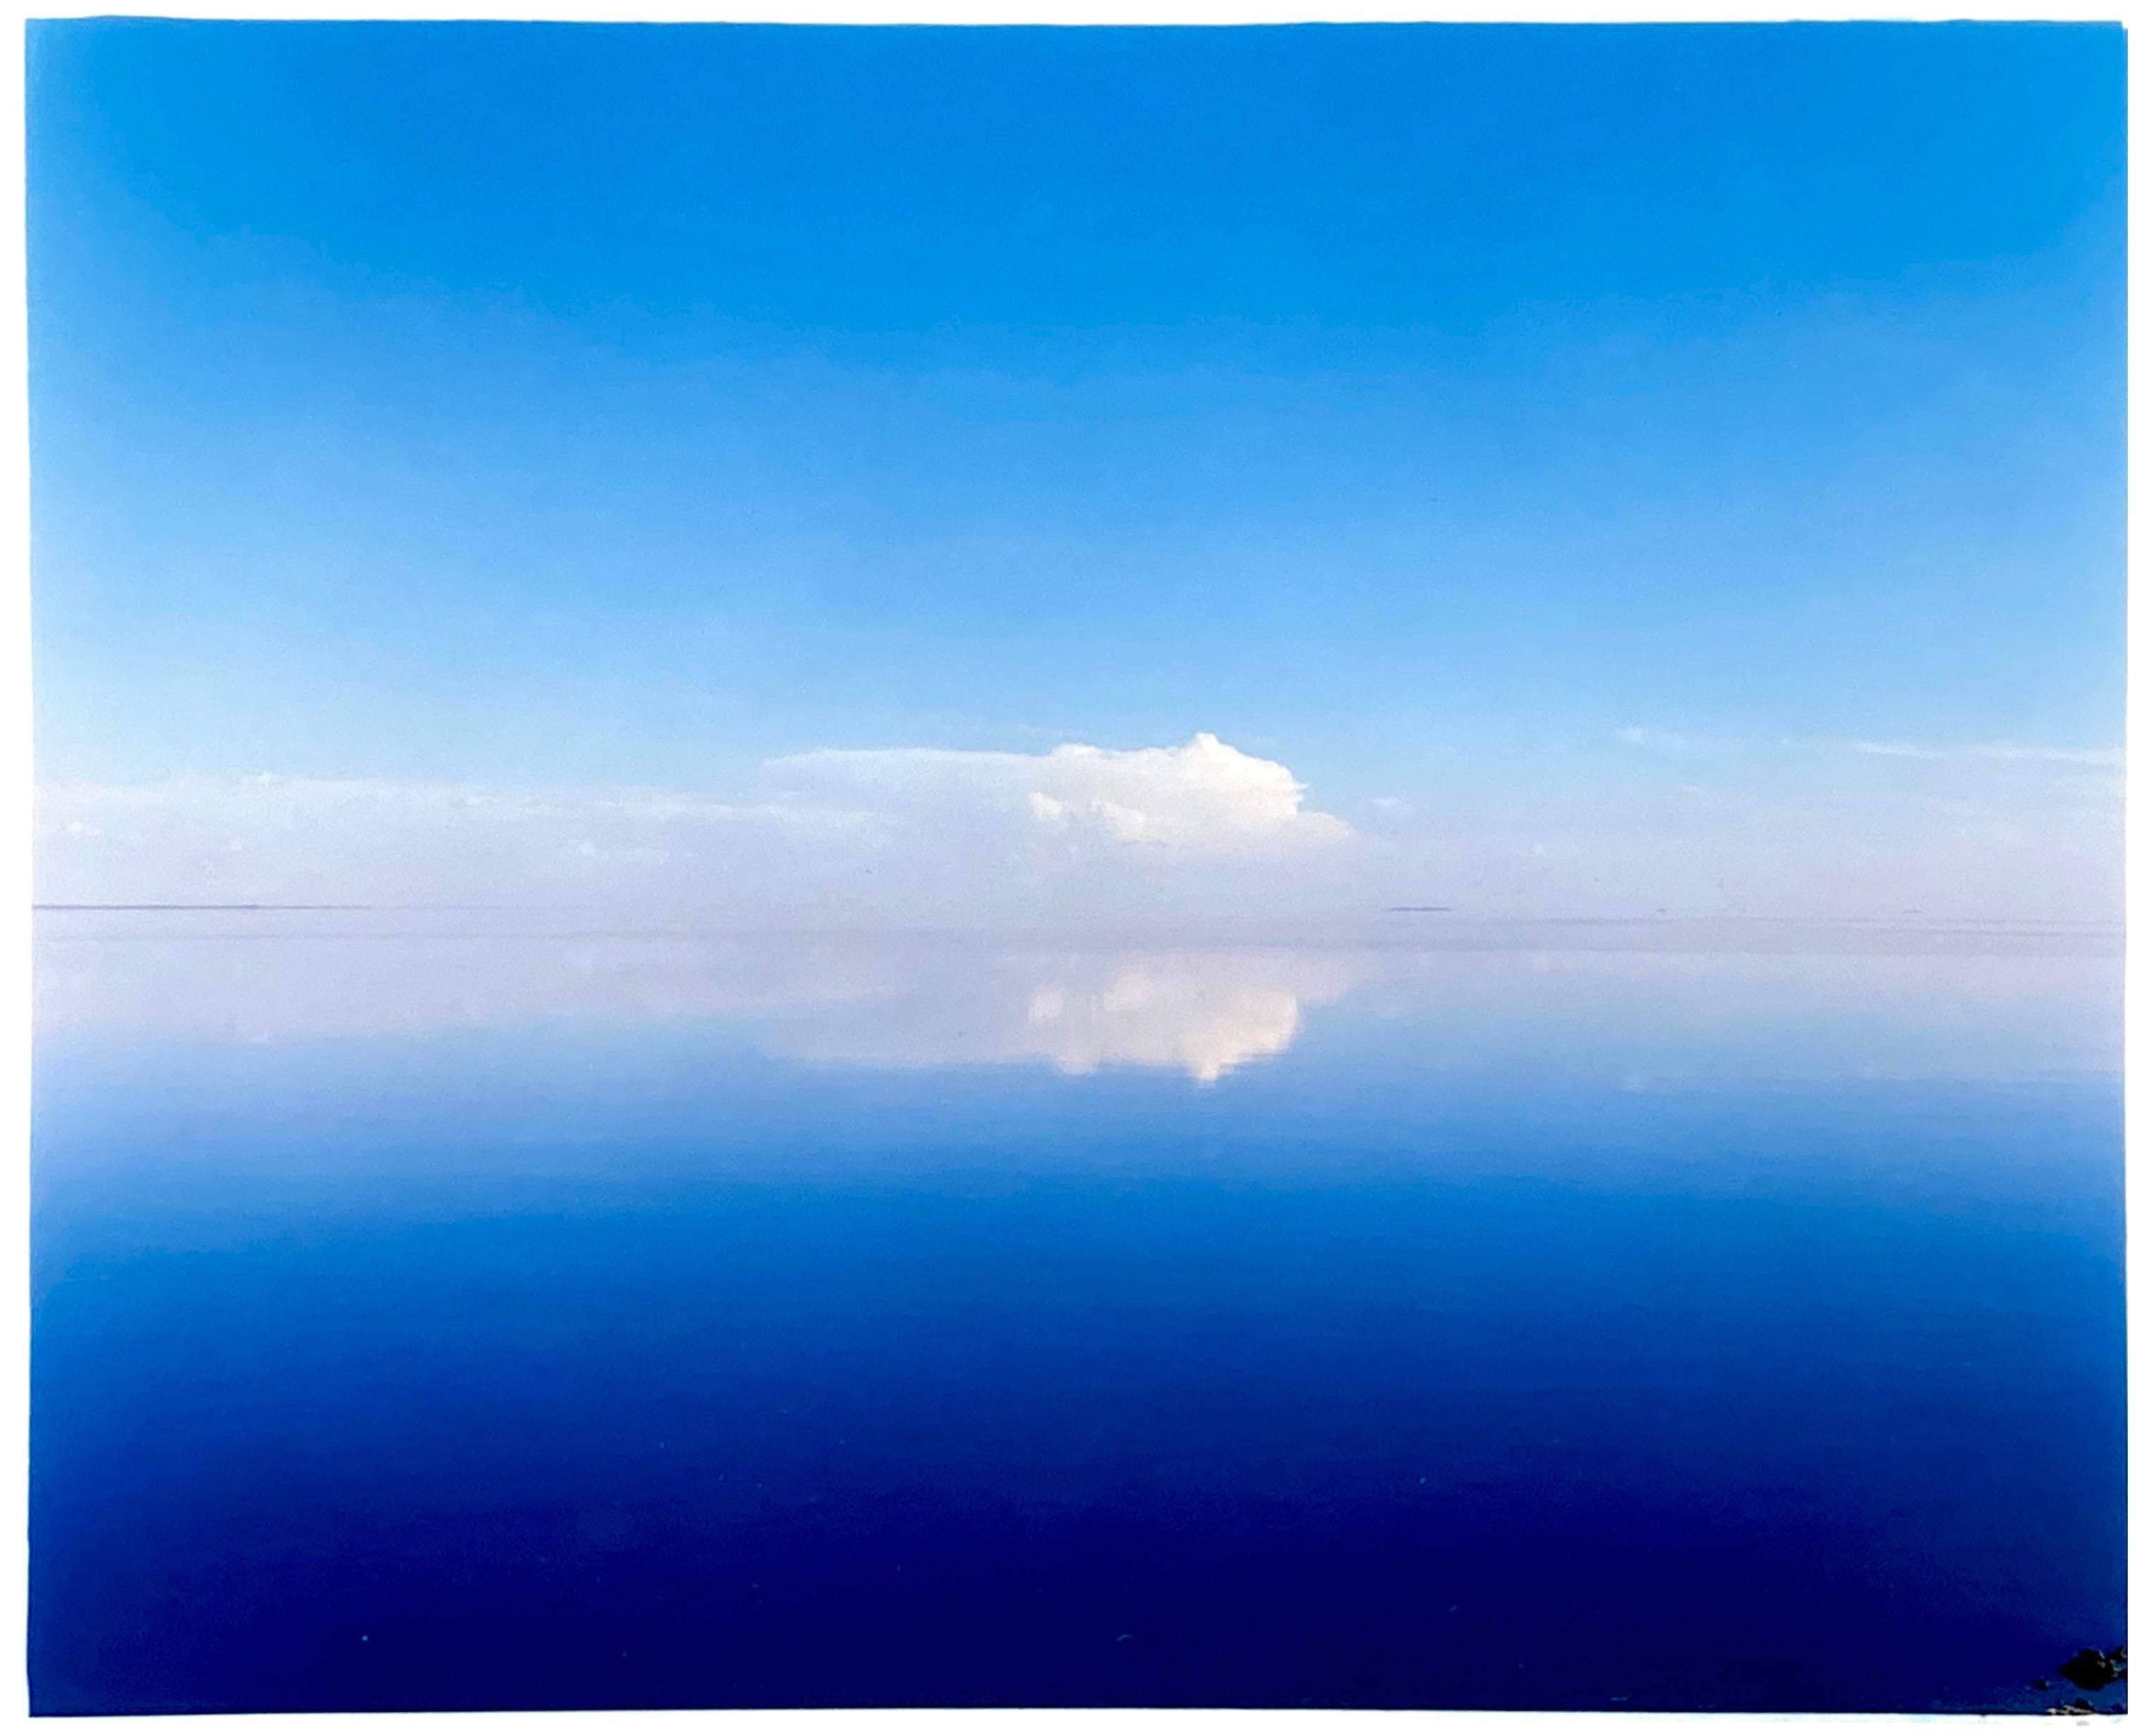 Ansicht von Bombay Beach, Salton Sea, Kalifornien – Blaues Aquarell-Farbfoto mit Blick auf das Meer